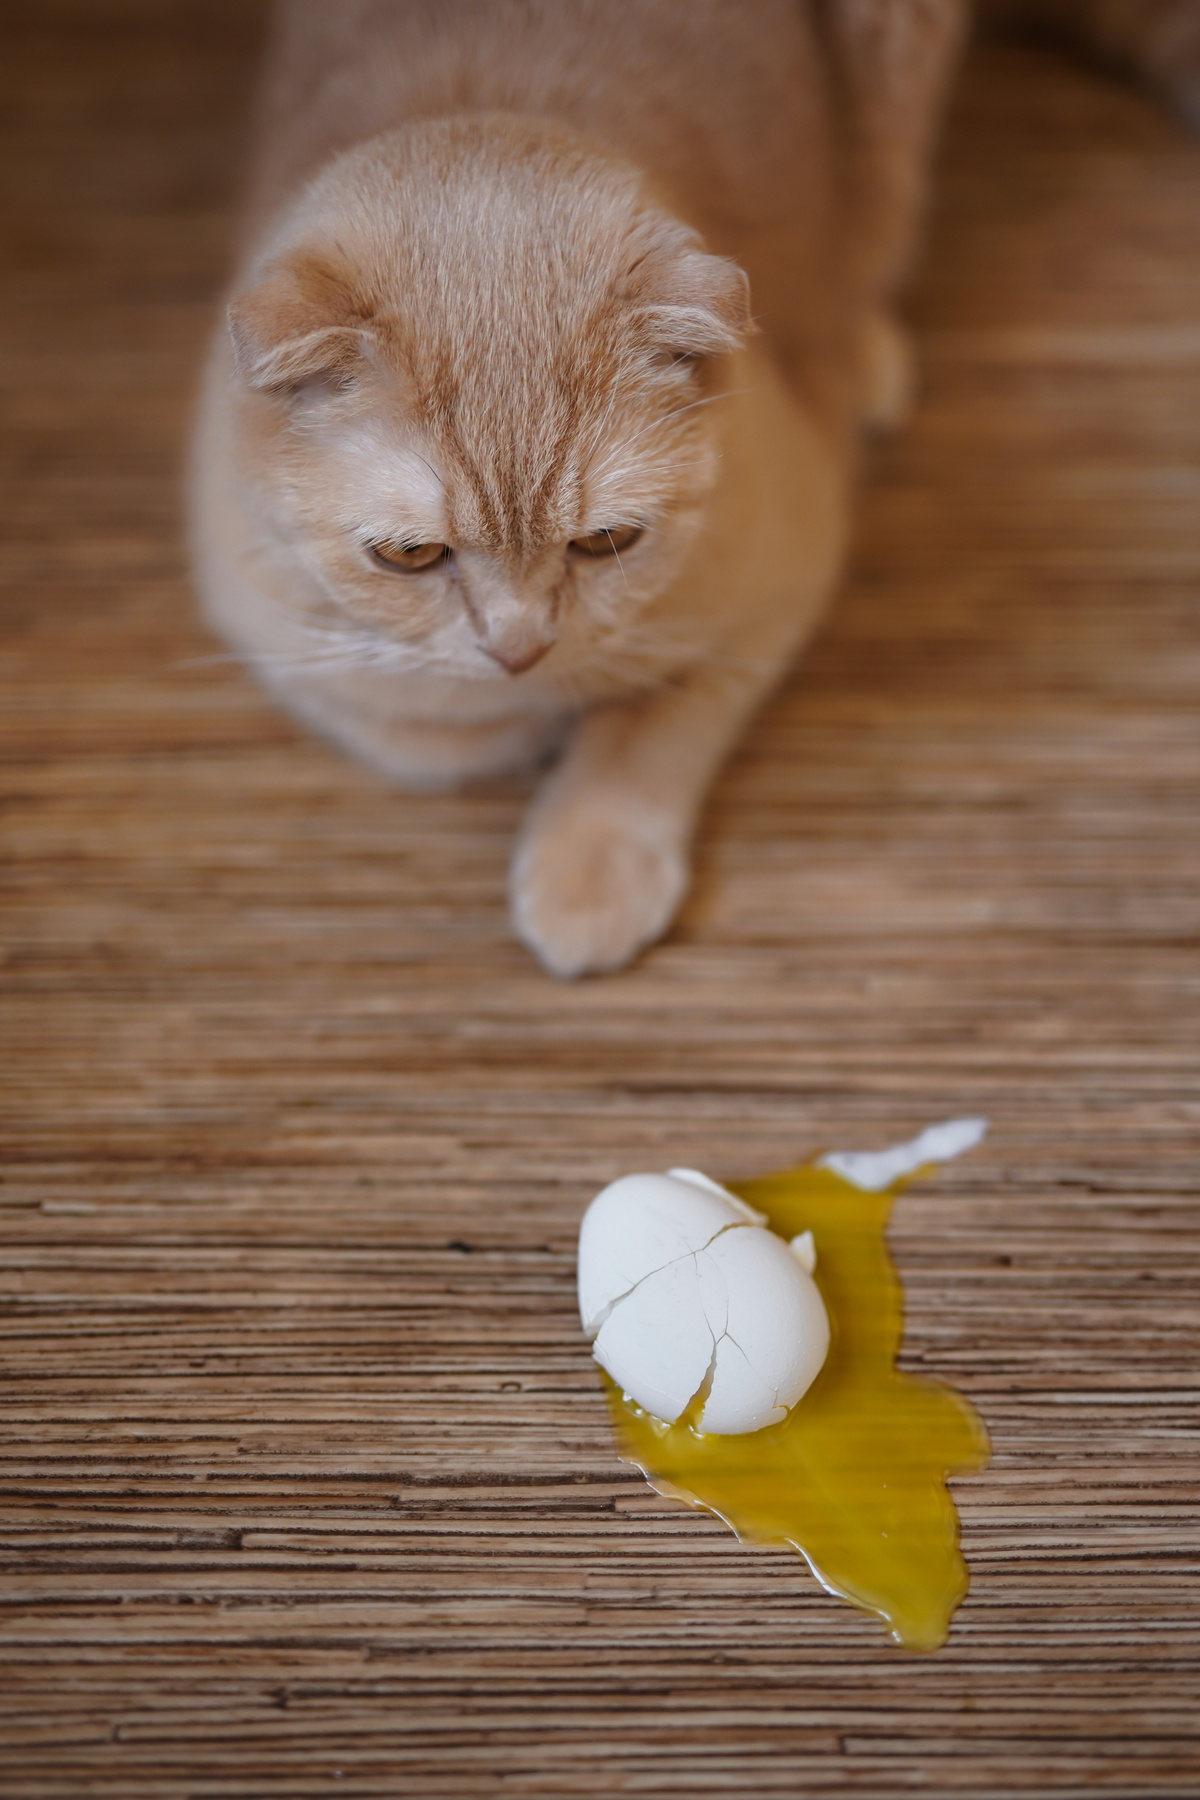 мышка бежала кот кошка яйцо разбилось желток скорлупа